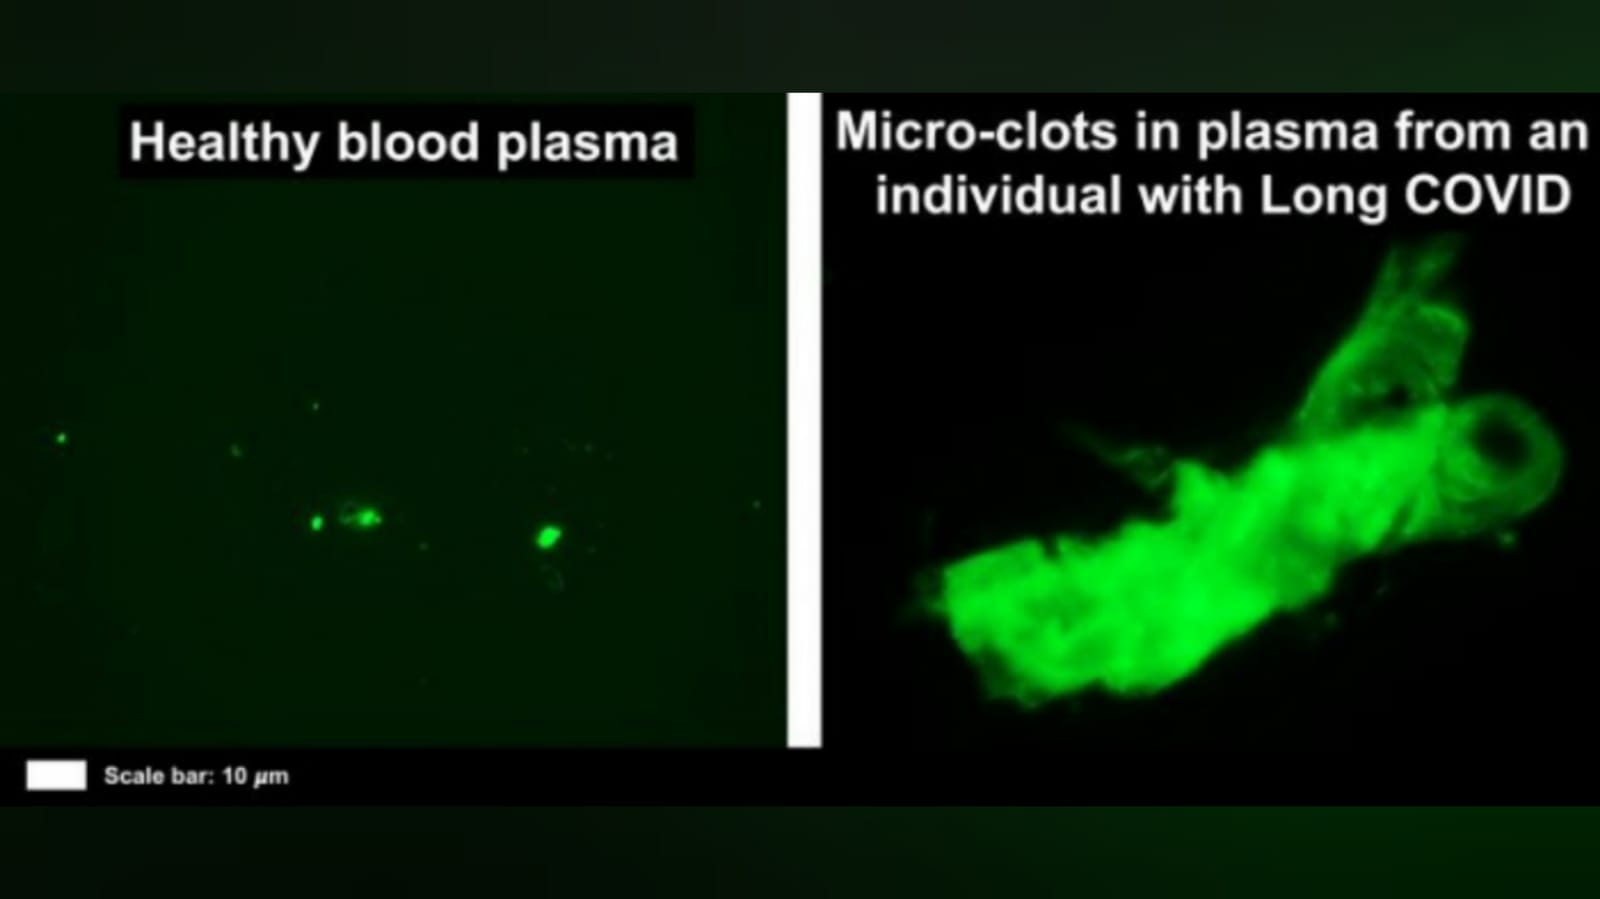 Imagen fluorescente de plasma sanguíneo sano (izquierda) en comparación con los microcoágulos en el plasma de un individuo con COVID largo a la derecha. Crédito: Resia Pretorius